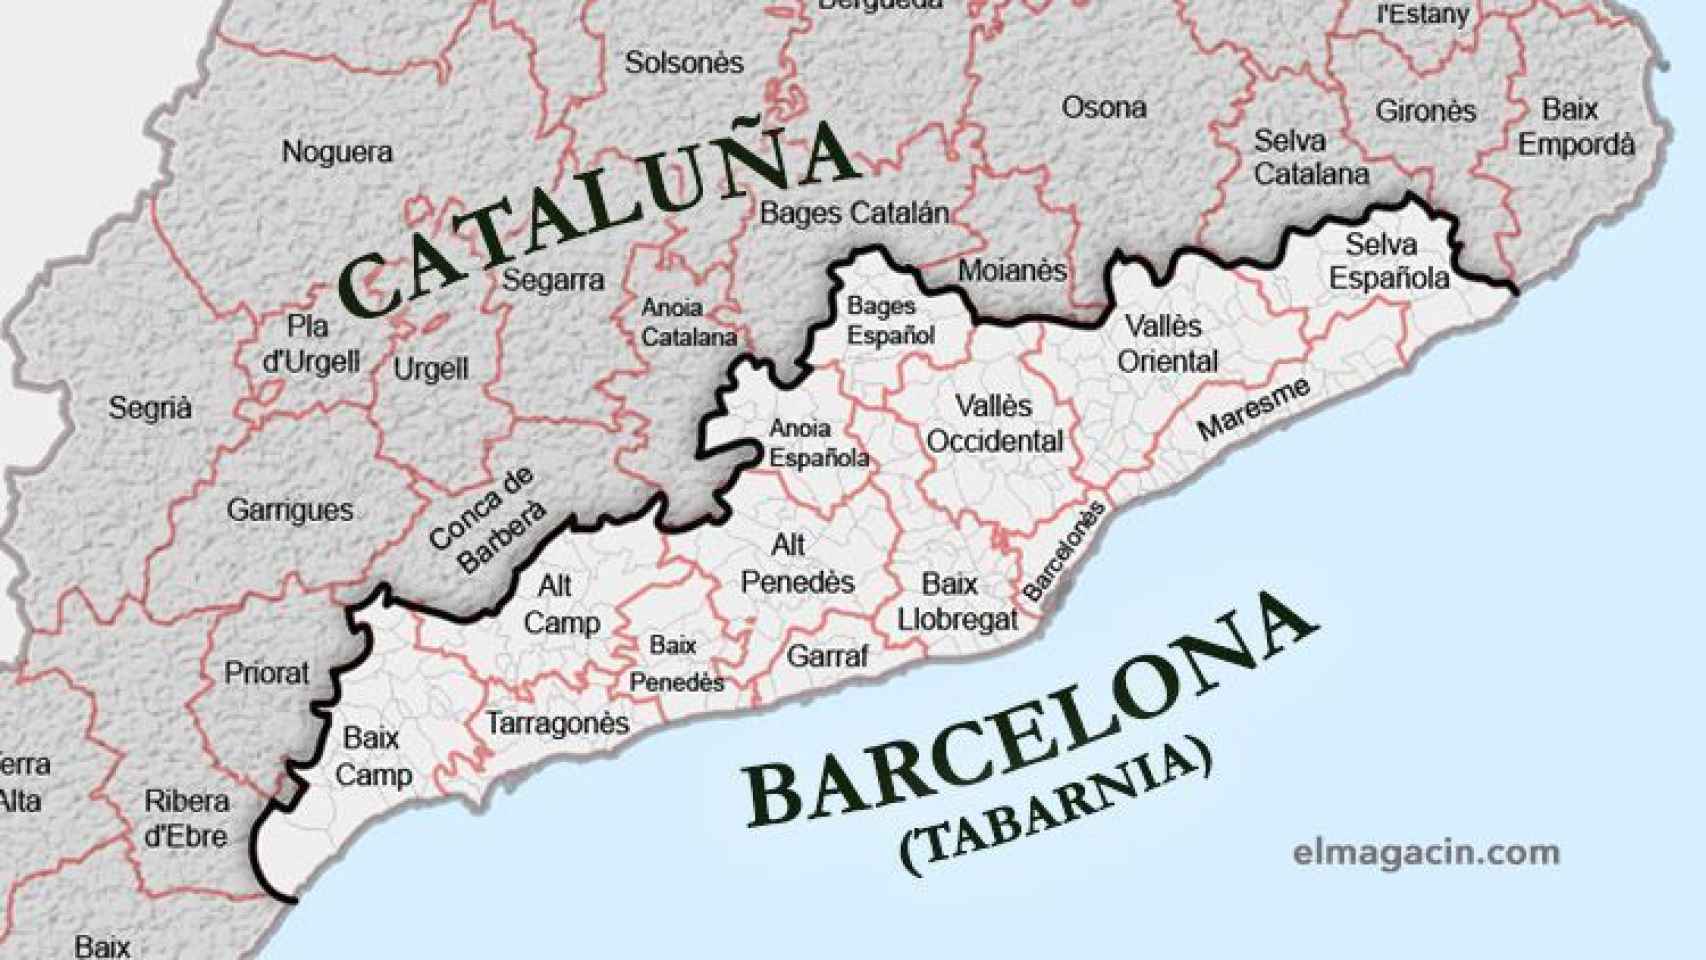 El territorio donde se encuentra Tabarnia dentro del mapa de Cataluña.